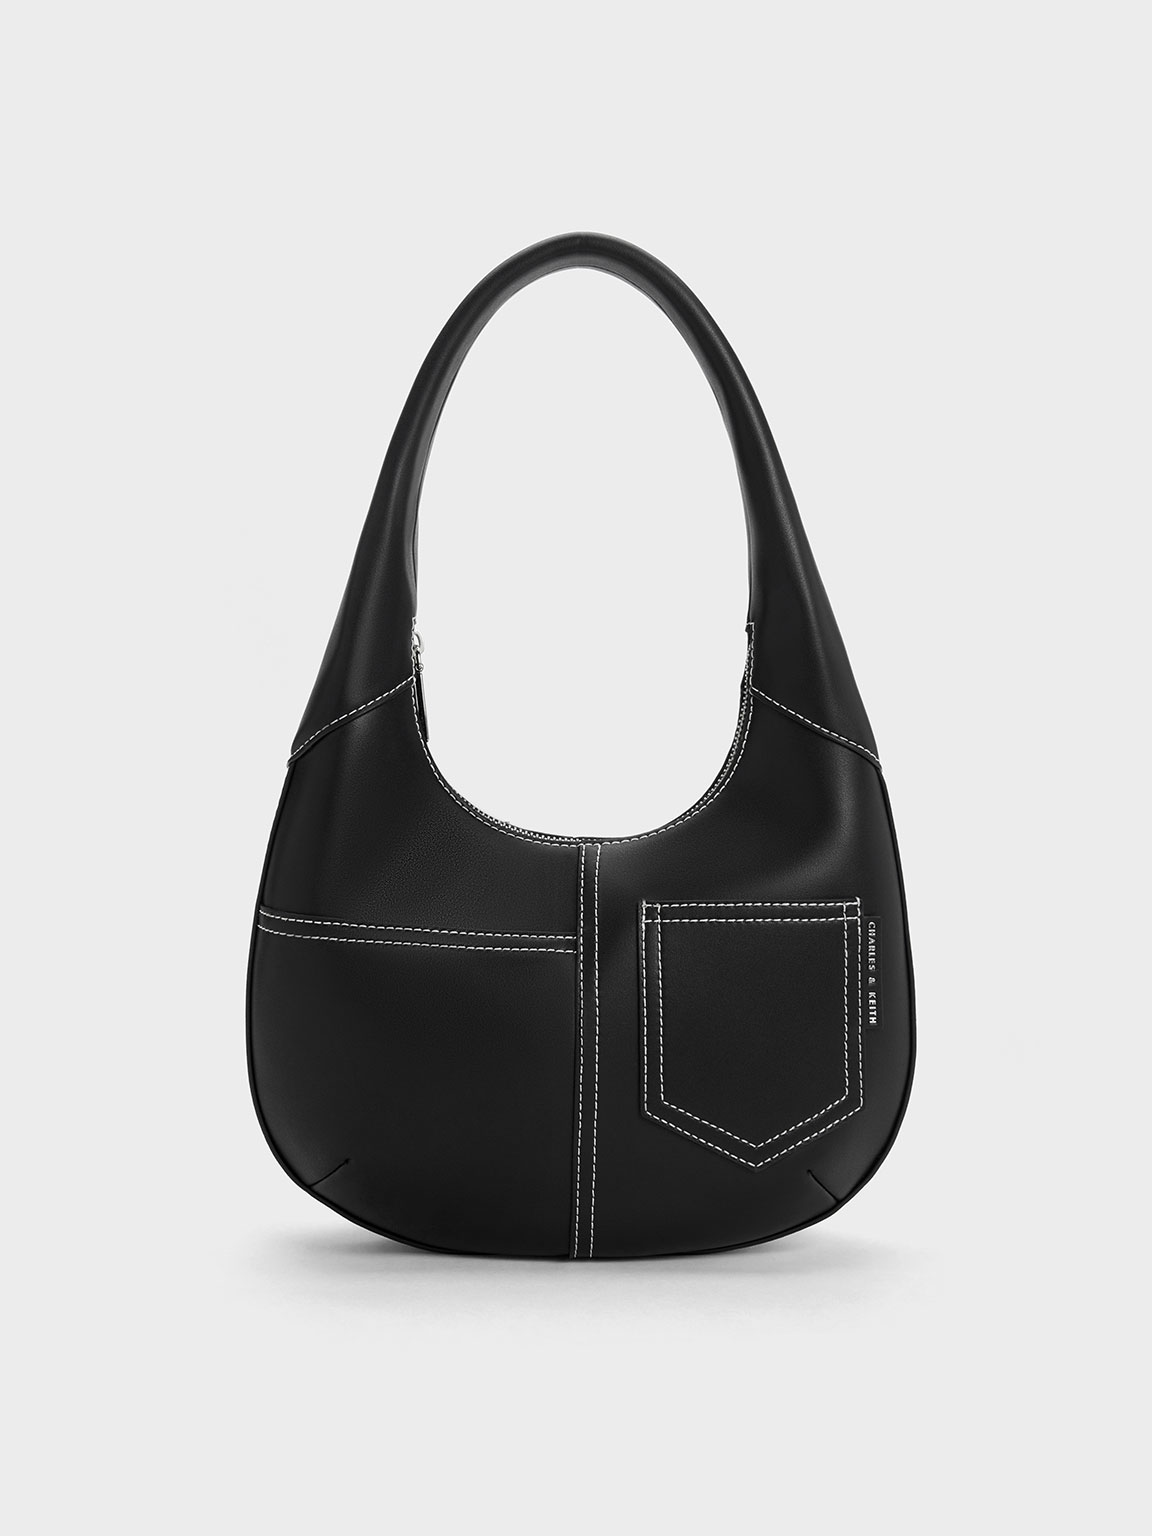 Coach, Accessories, New Coach Mini Duffle Bag Charm Keychain Bag Charm  Coin Case Fuchsia